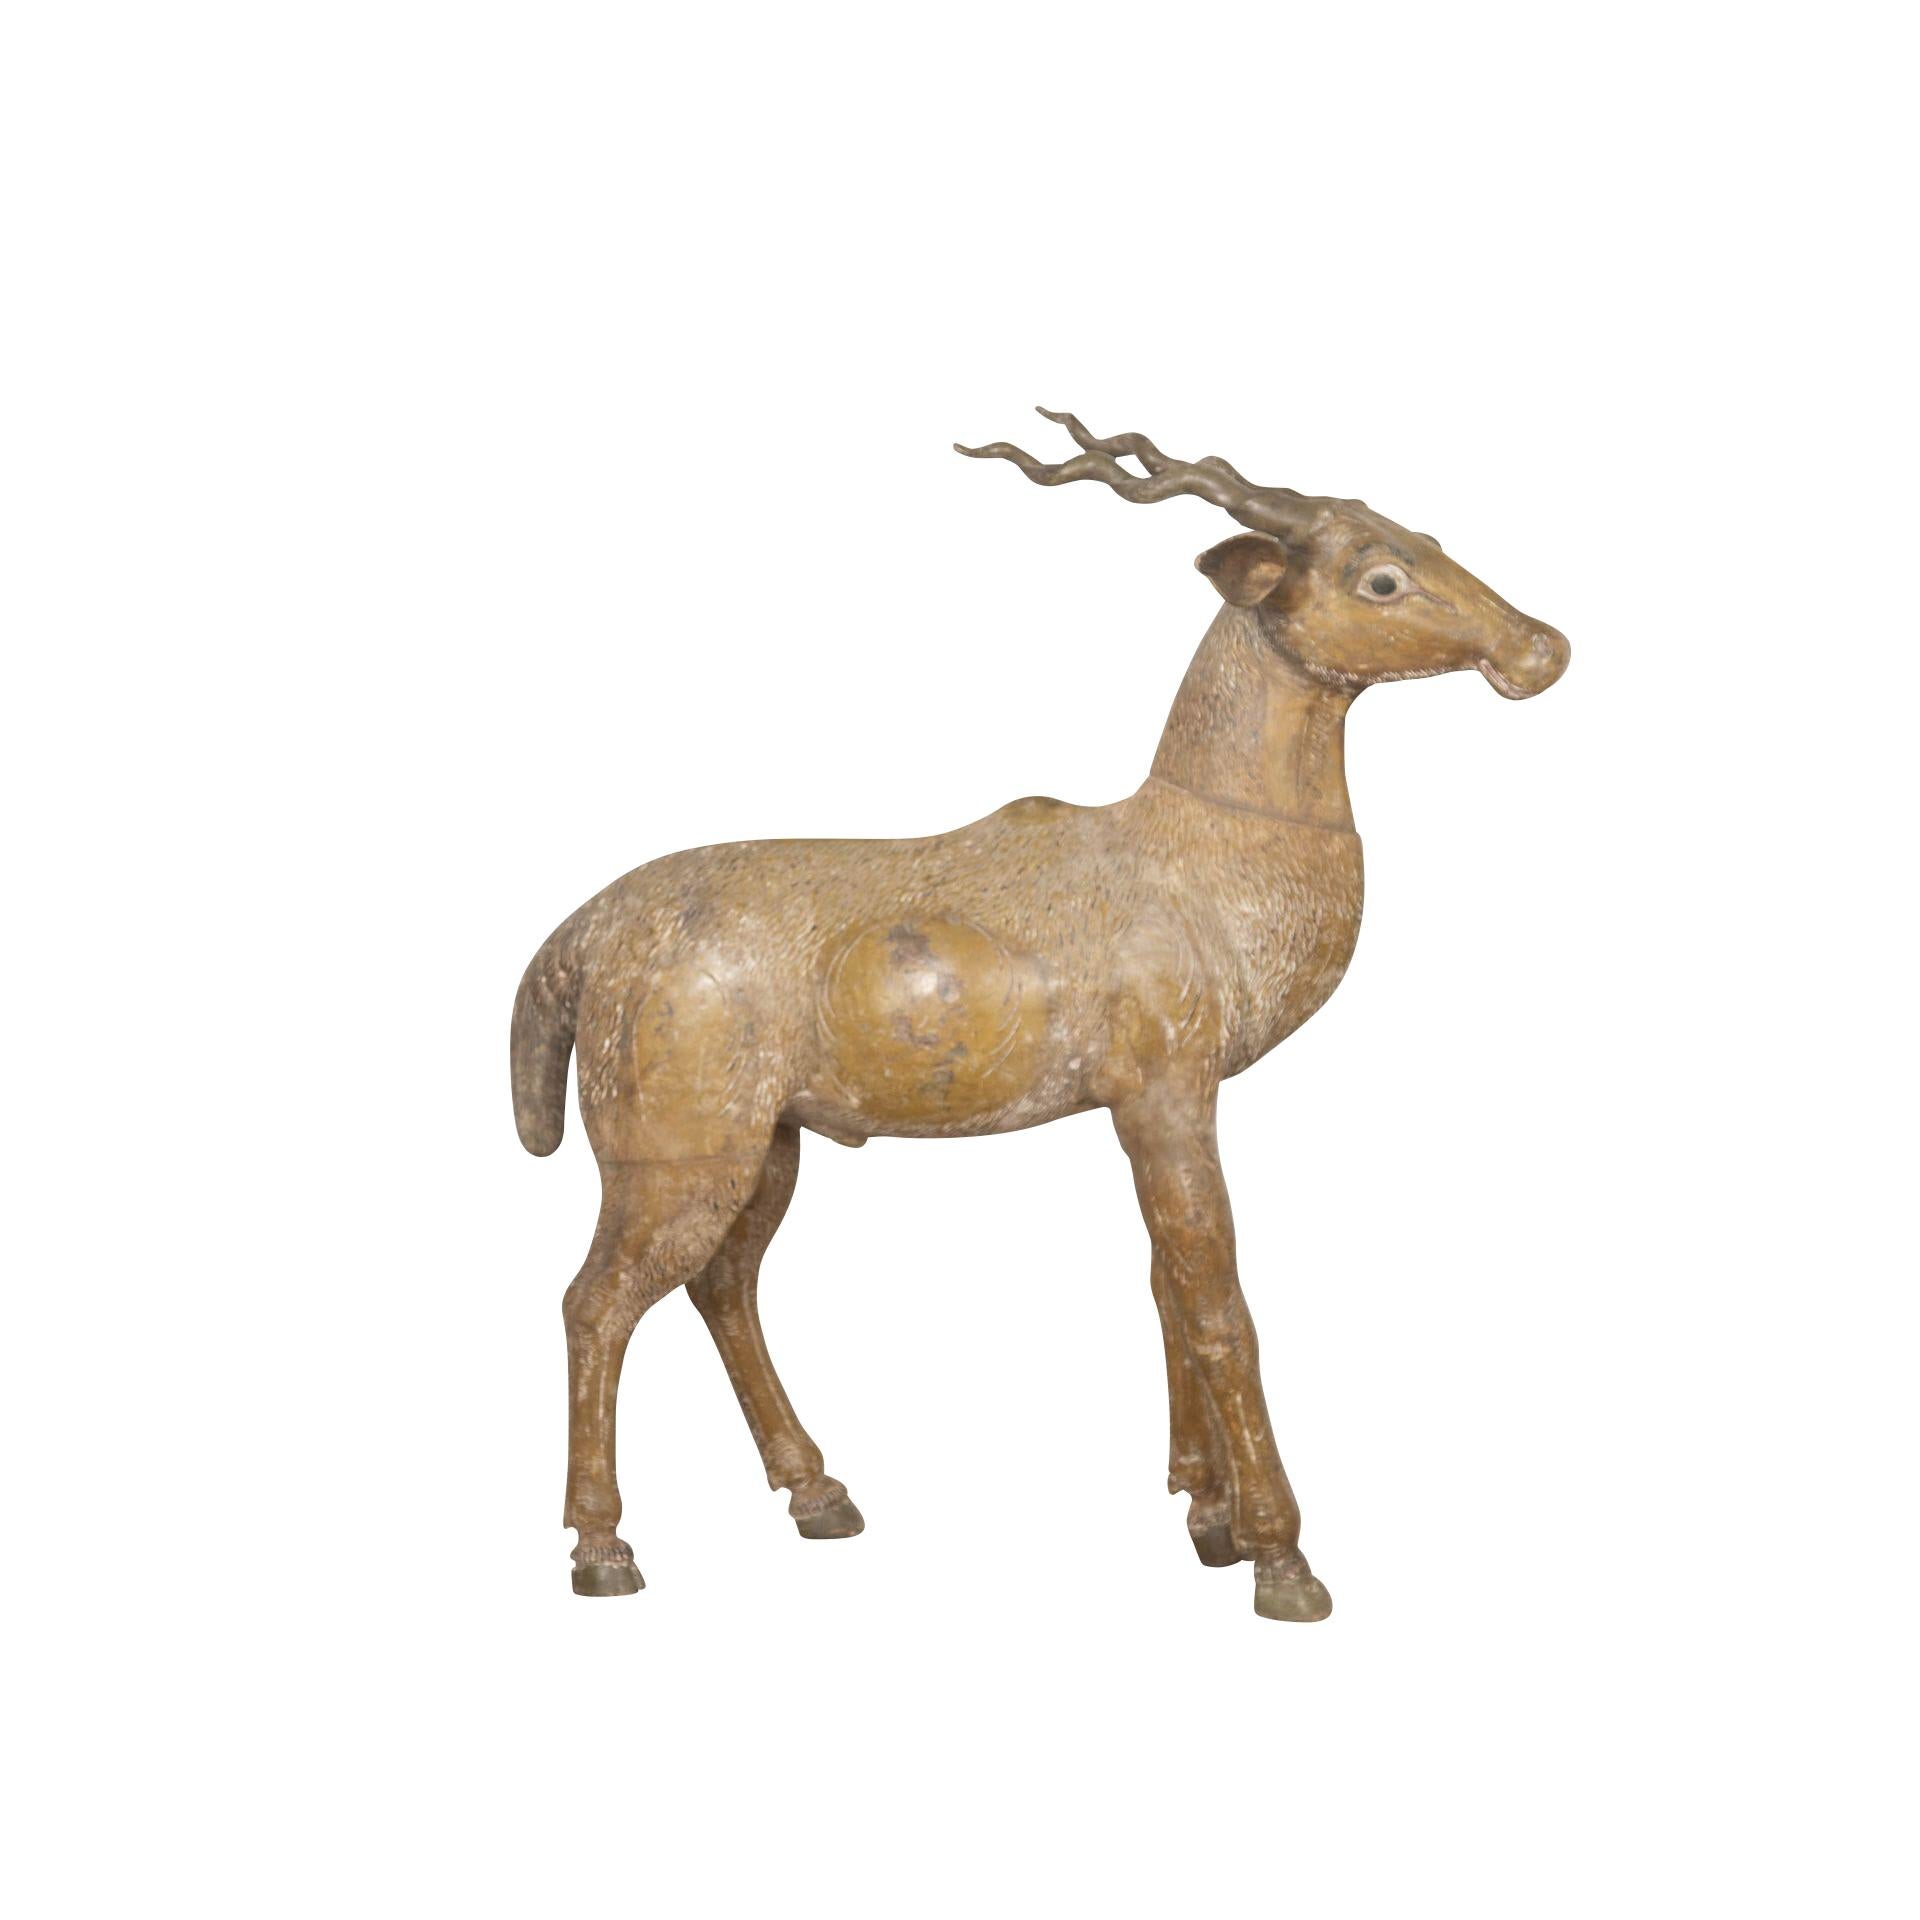  Eine ungewöhnliche holzgeschnitzte Antilope aus dem späten 19. Jahrhundert, mit naivem Gesichtsausdruck und in gespreizter Haltung, fertiggestellt in seiner originalen, farbenfrohen Dekoration. Um 1880.

H: 91 cm (35 13/16